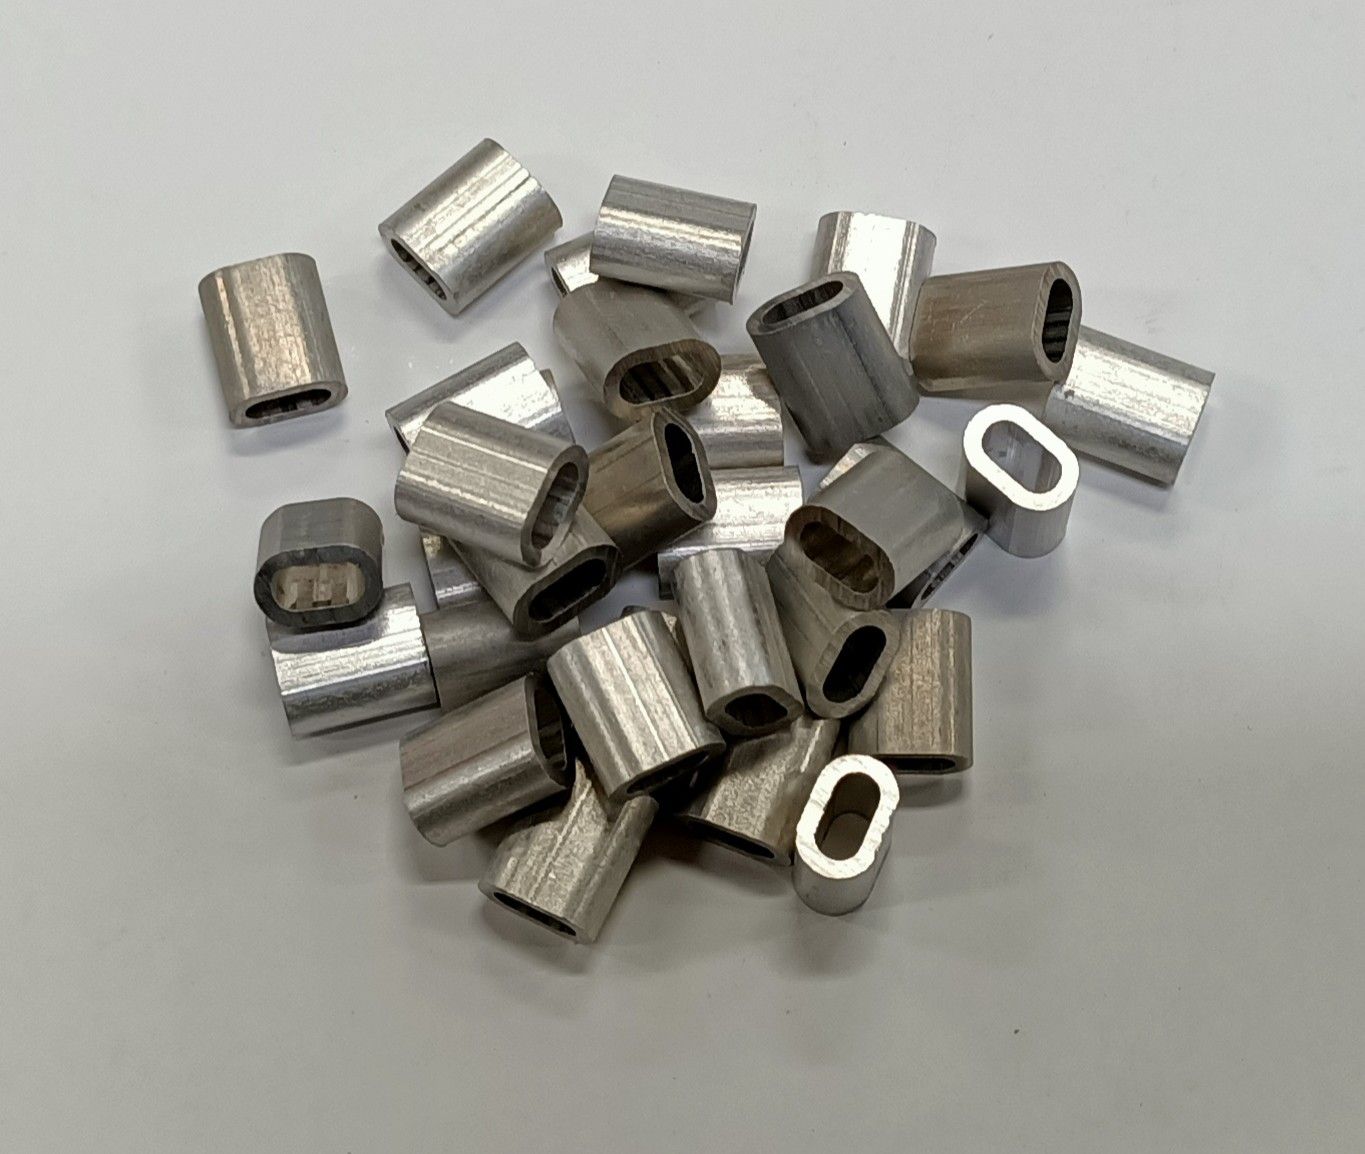 Fermaglio/Manicotto alluminio mm 3,0 confezione pz 100 per fili/funi